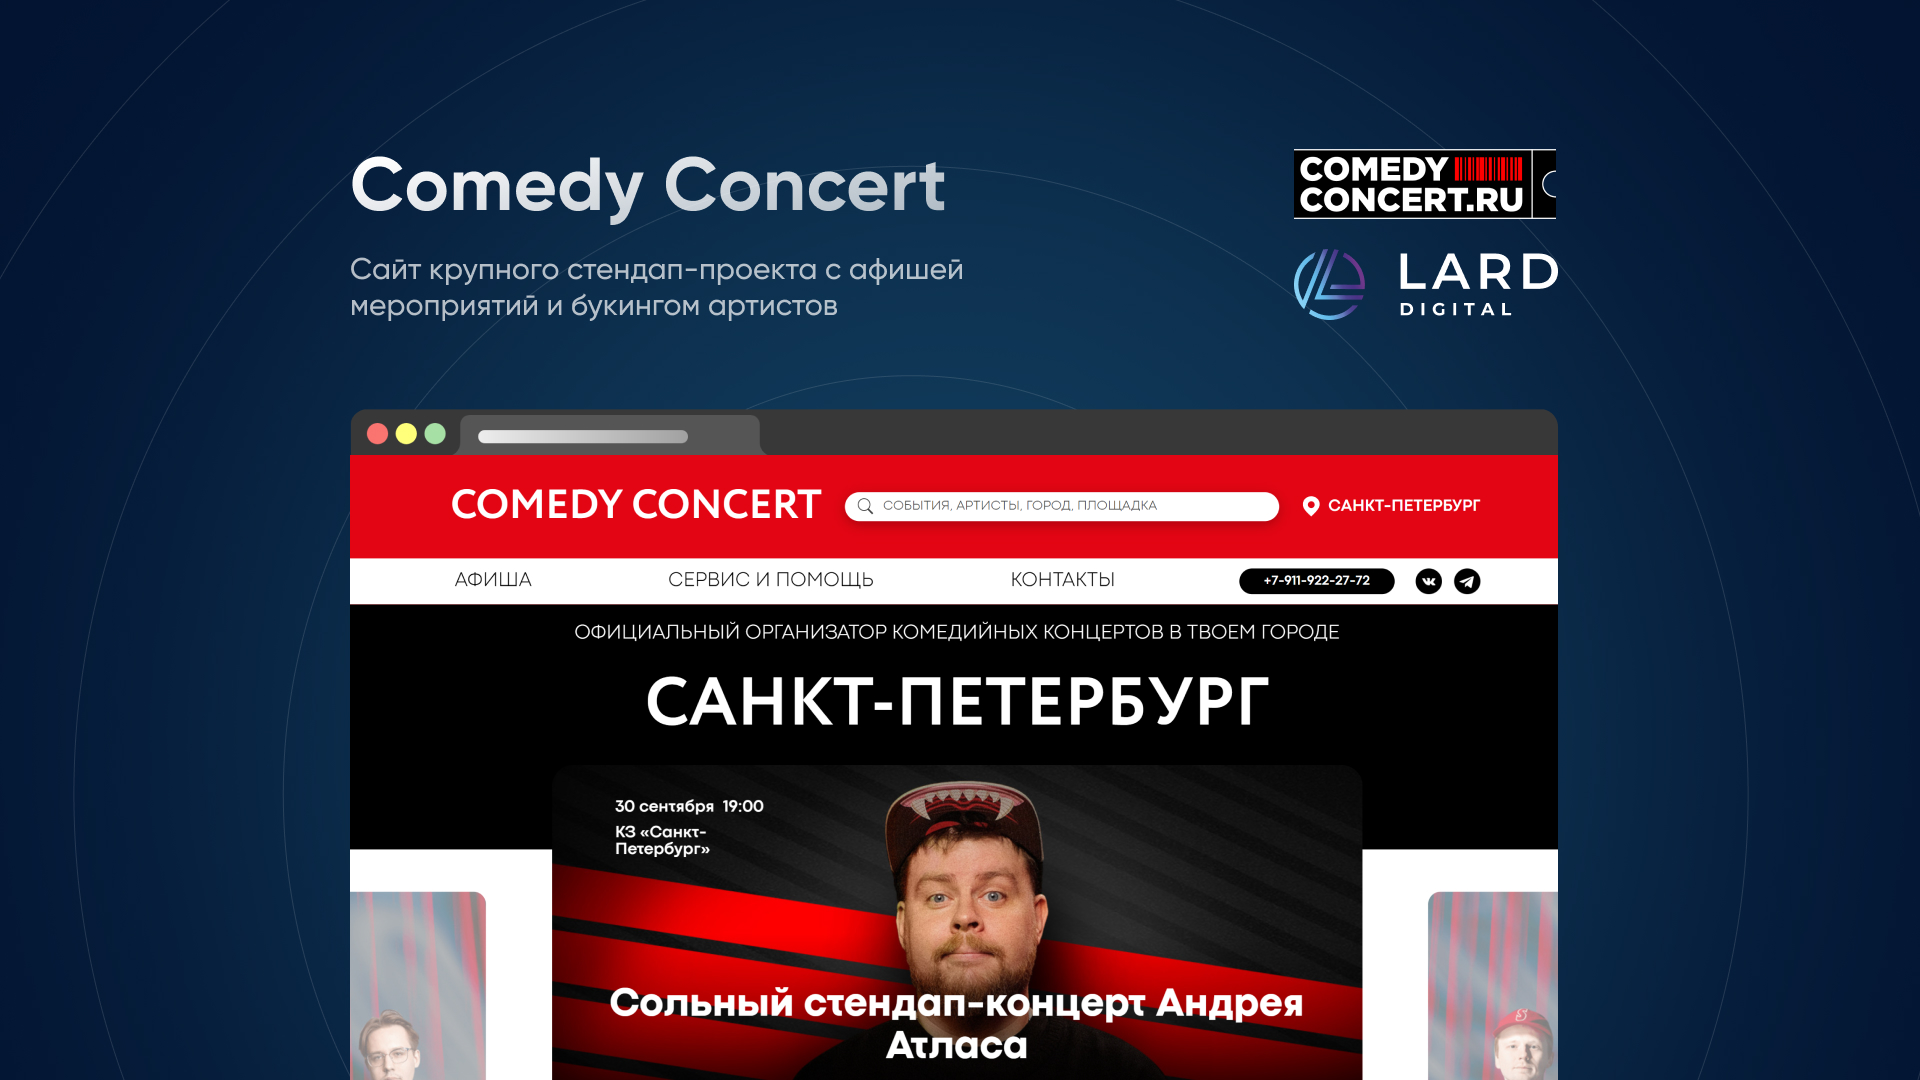 Сайт крупного стендап-проекта Comedy Concert